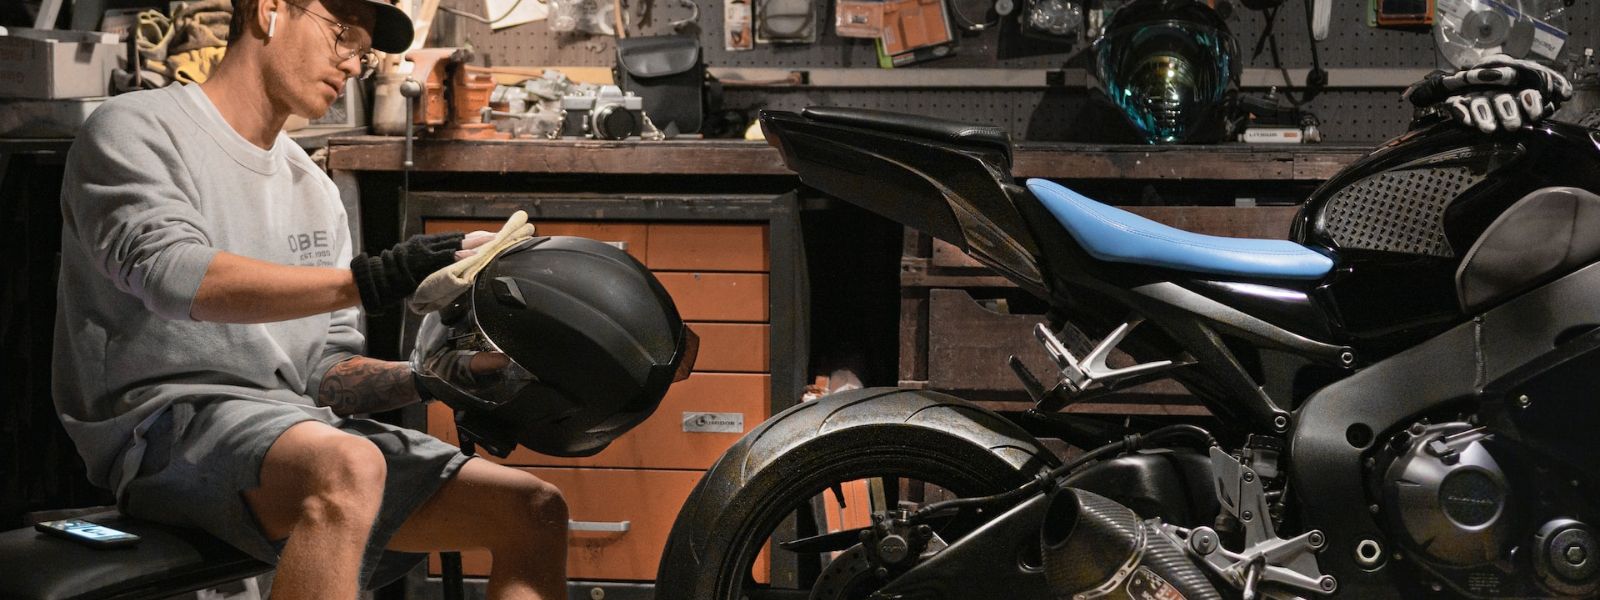 Comment nettoyer un casque de moto ?